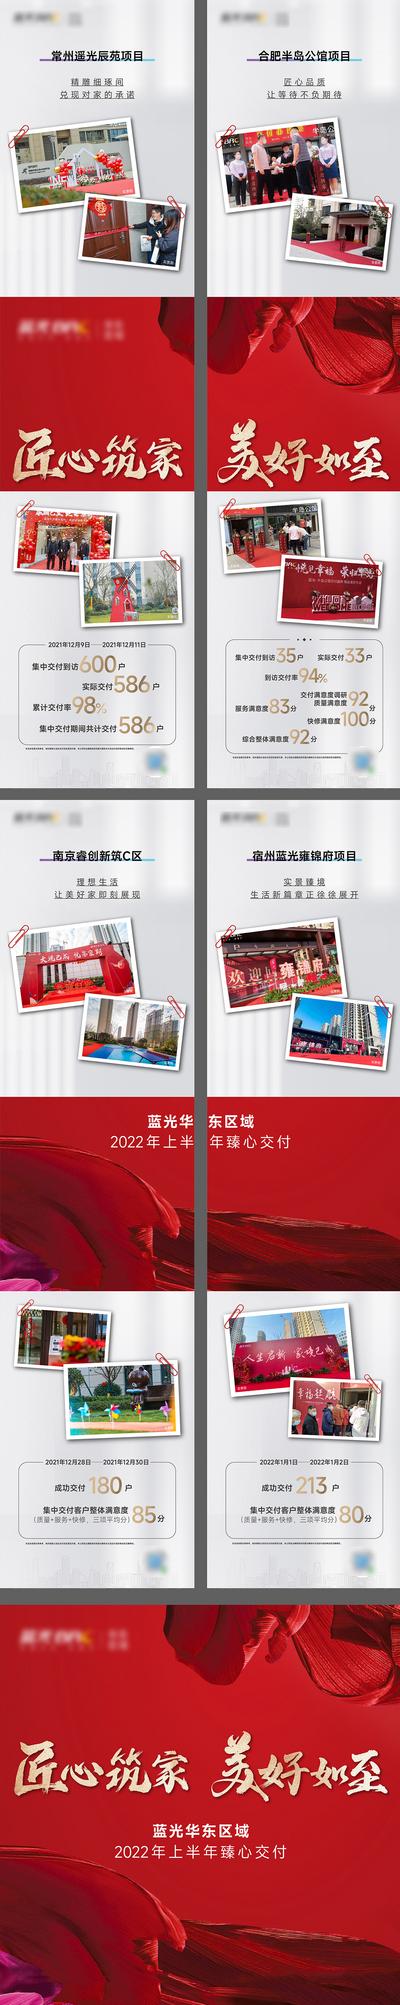 南门网 海报 四宫格 房地产 交房 交付 热销 数据 红色 高端 照片